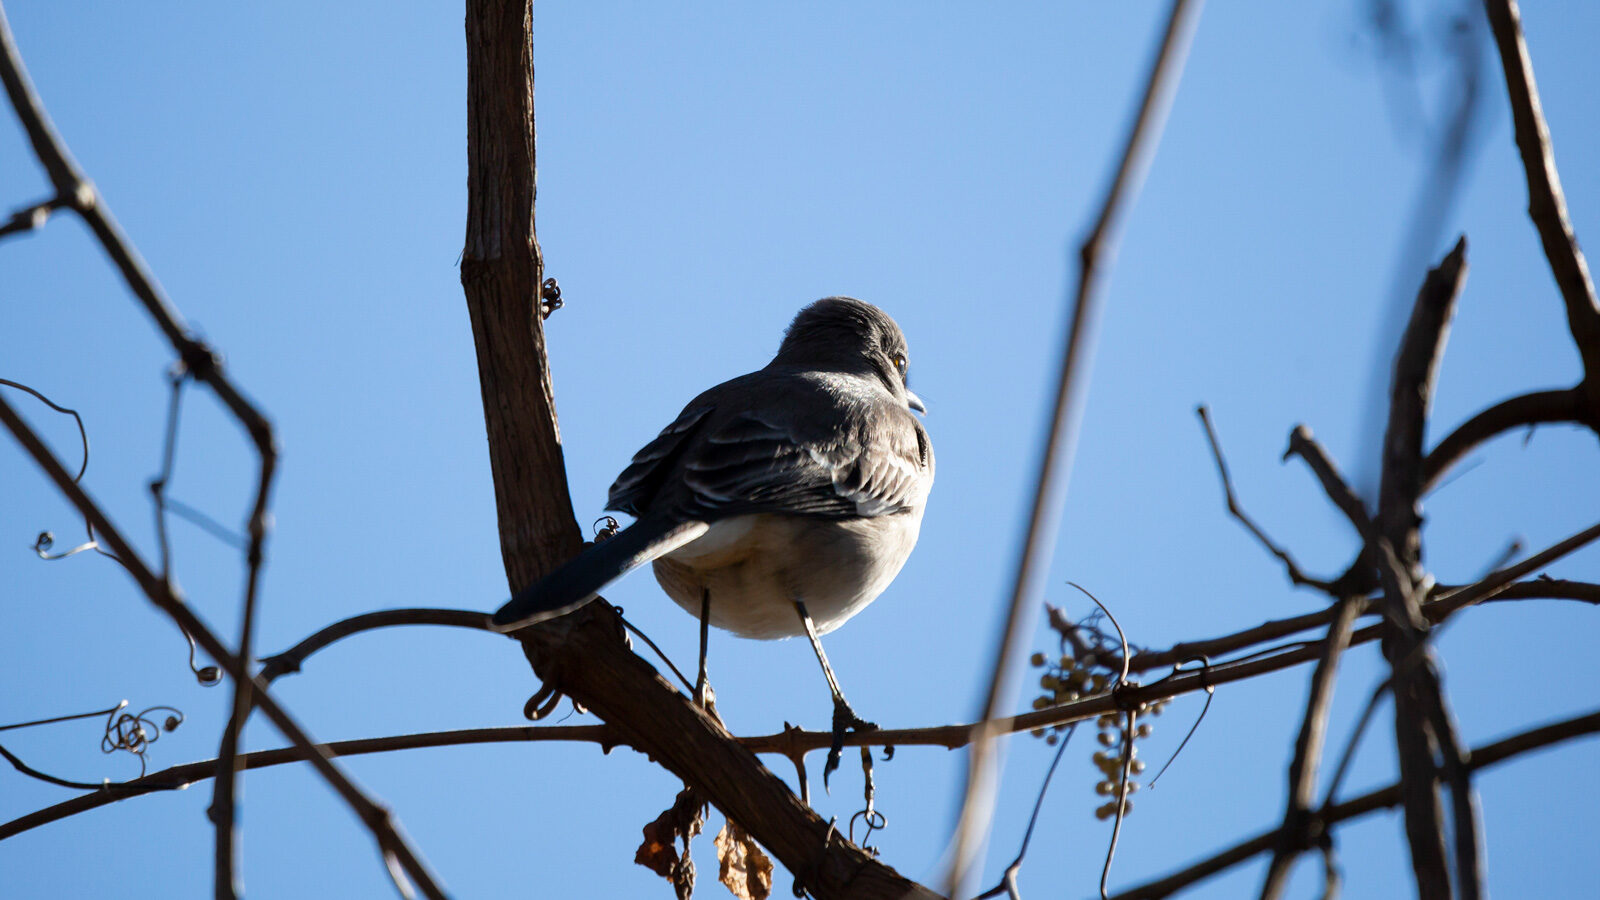 Northern mockingbird facing away